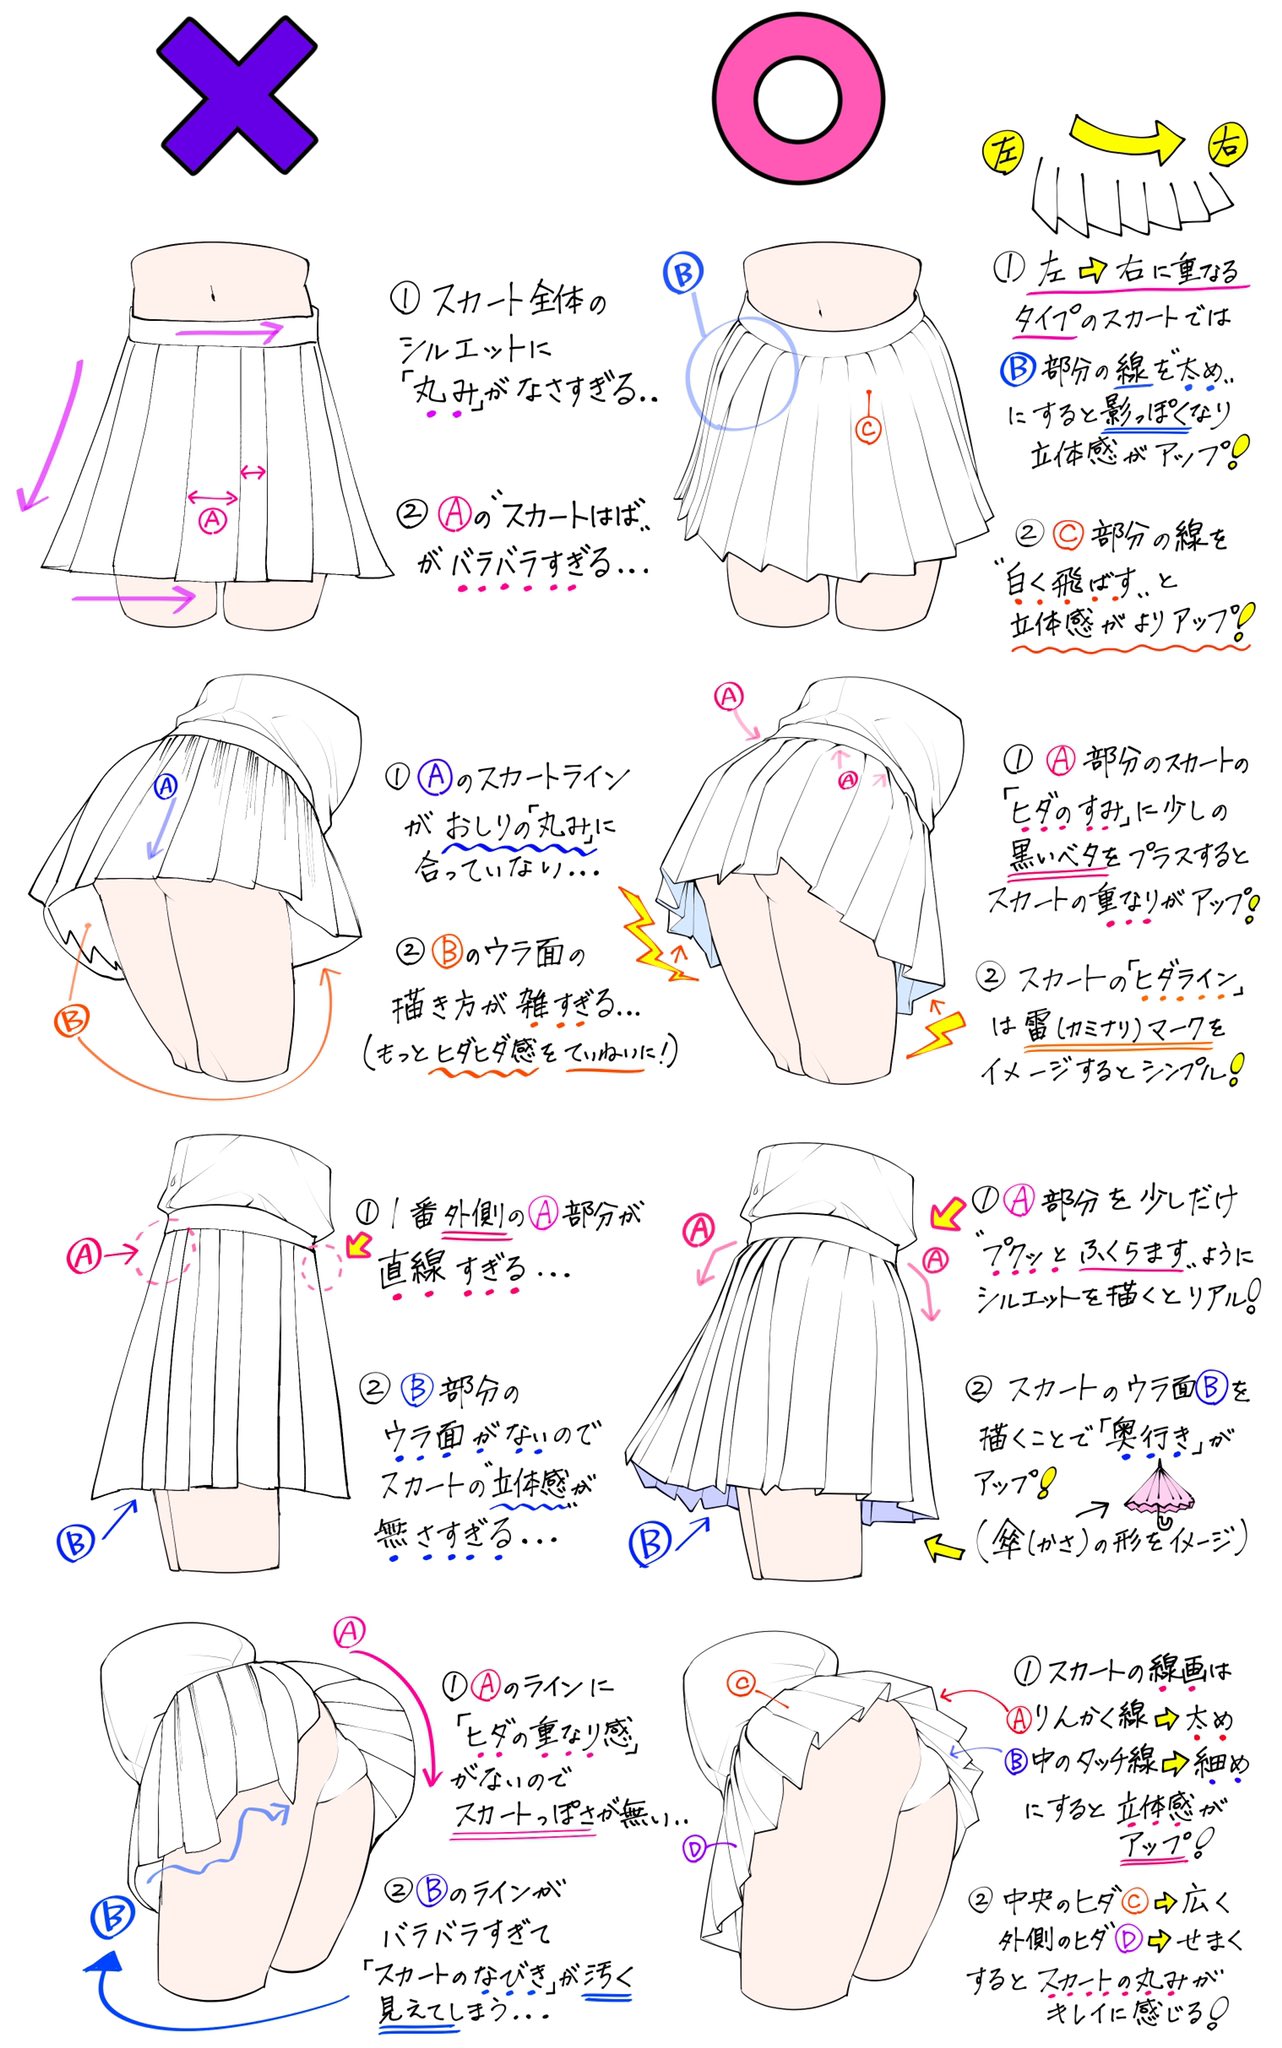 吉村拓也 イラスト講座 スカートの描き方 学生っぽいスカートが上達する ダメかも と 良いかも T Co Tfy01x2pnt Twitter